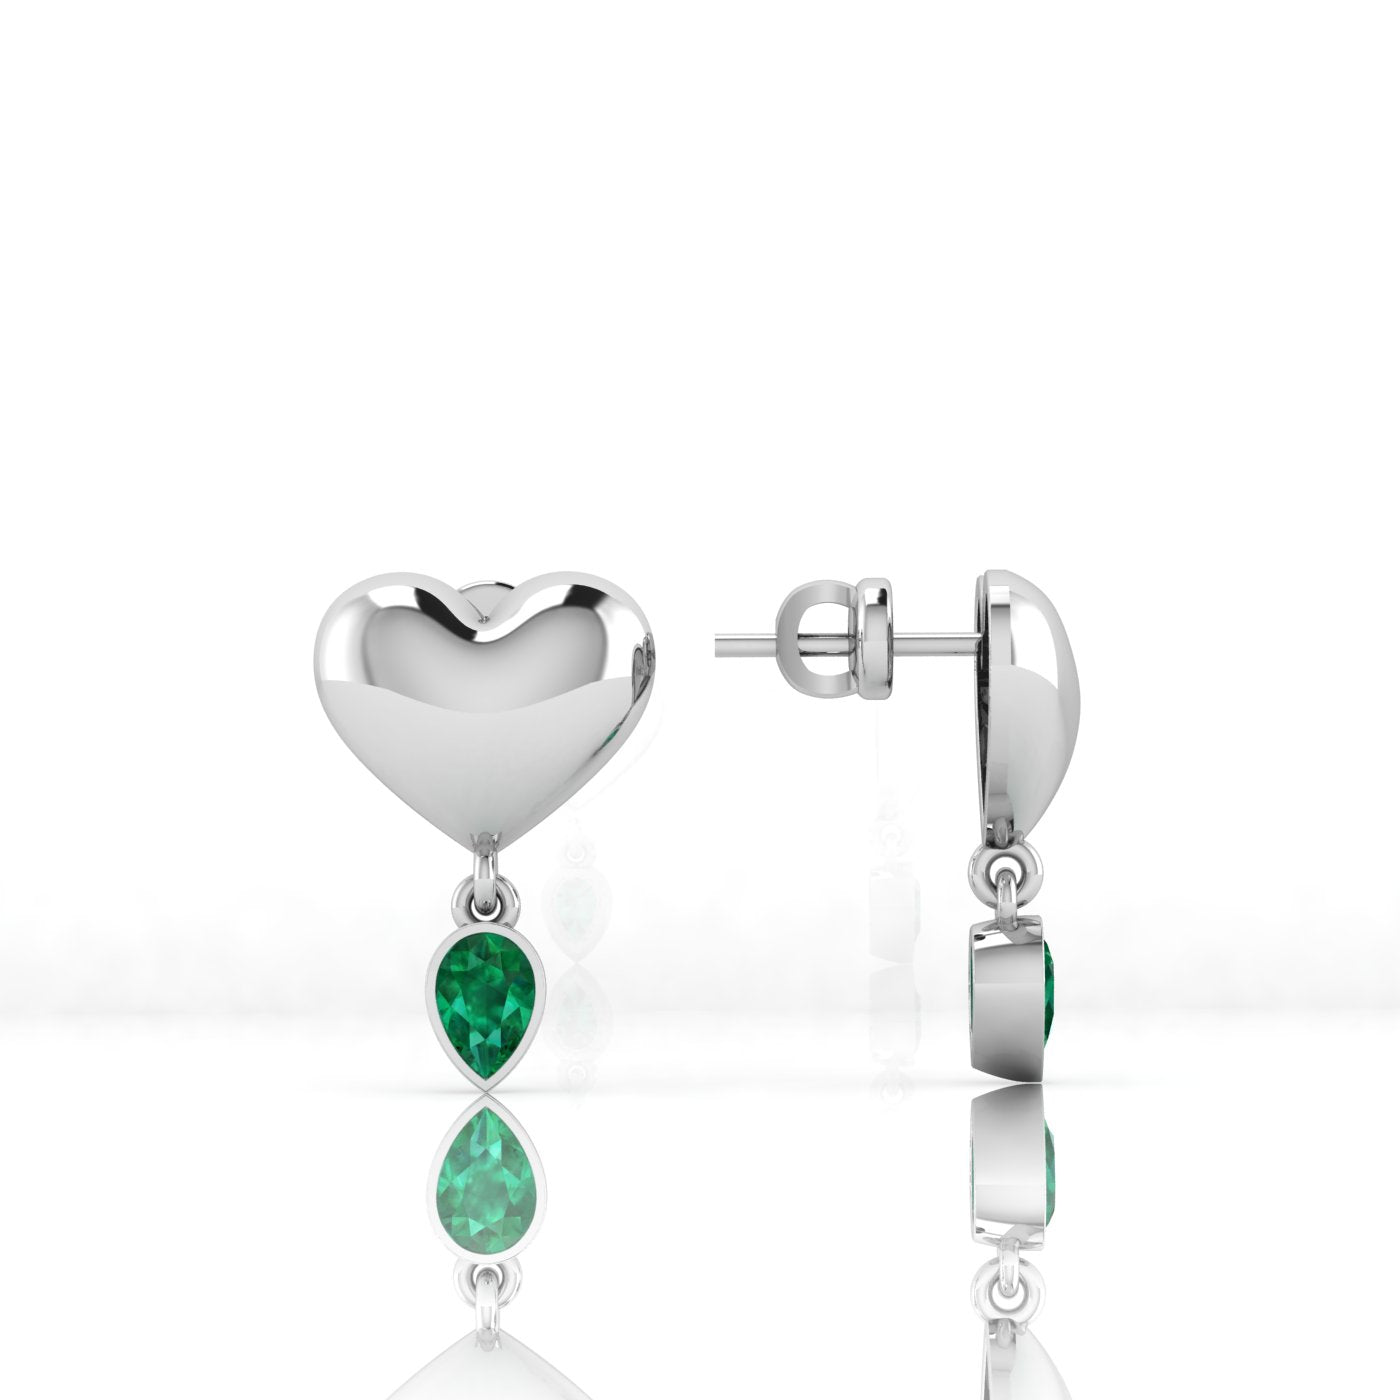 Ditsuhi Puff Heart Earrings with Natural Green Peridot/ Ուռուցիկ սիրտ և կախվող քարով օղ